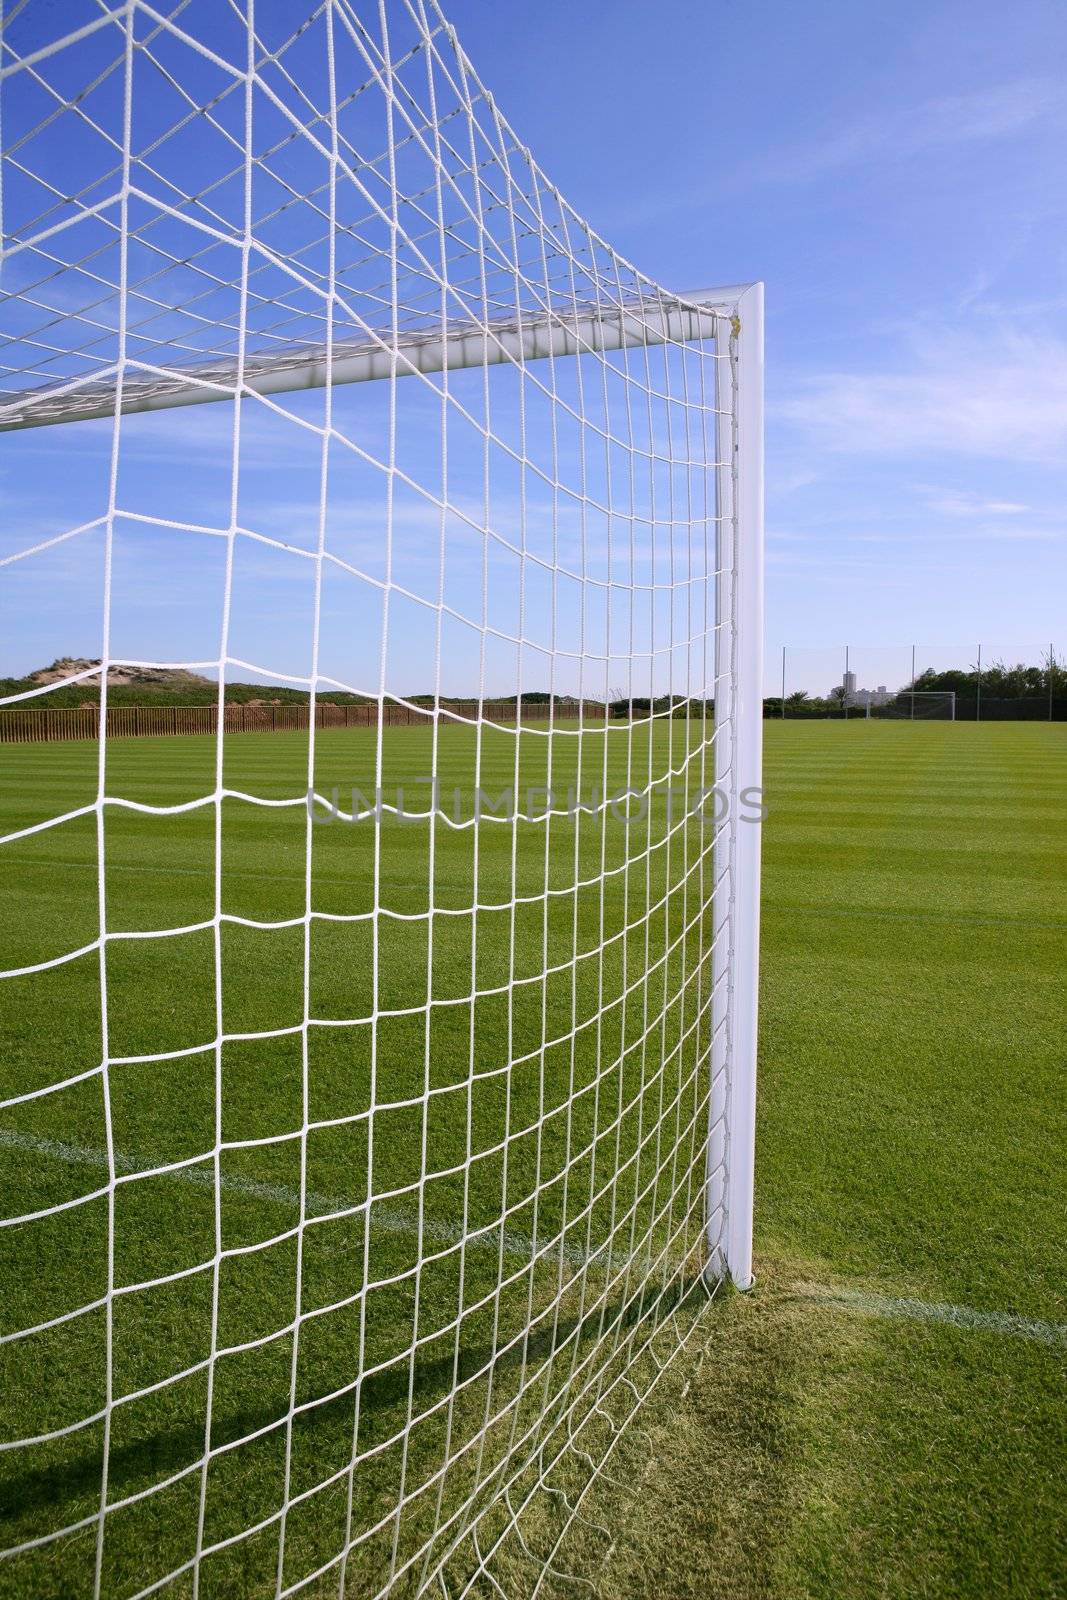 Net soccer goal football green grass field by lunamarina